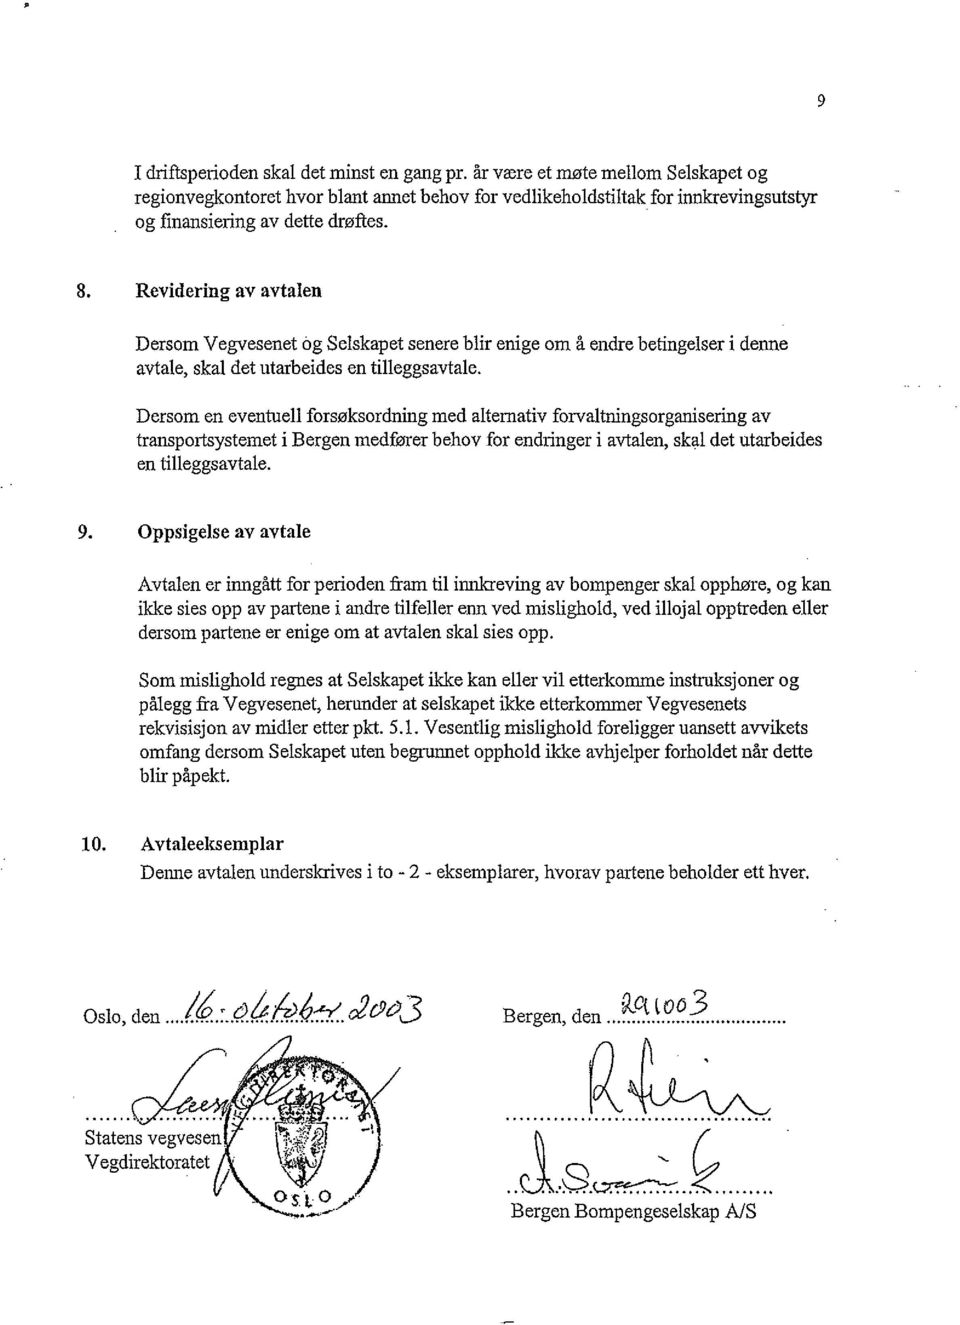 Revidering av avtalen Dersom Vegvesenet bg Selskapet senere blir enige om å endre betingelser i denne avtale, skal det utarbeides en tilleggsavtale.